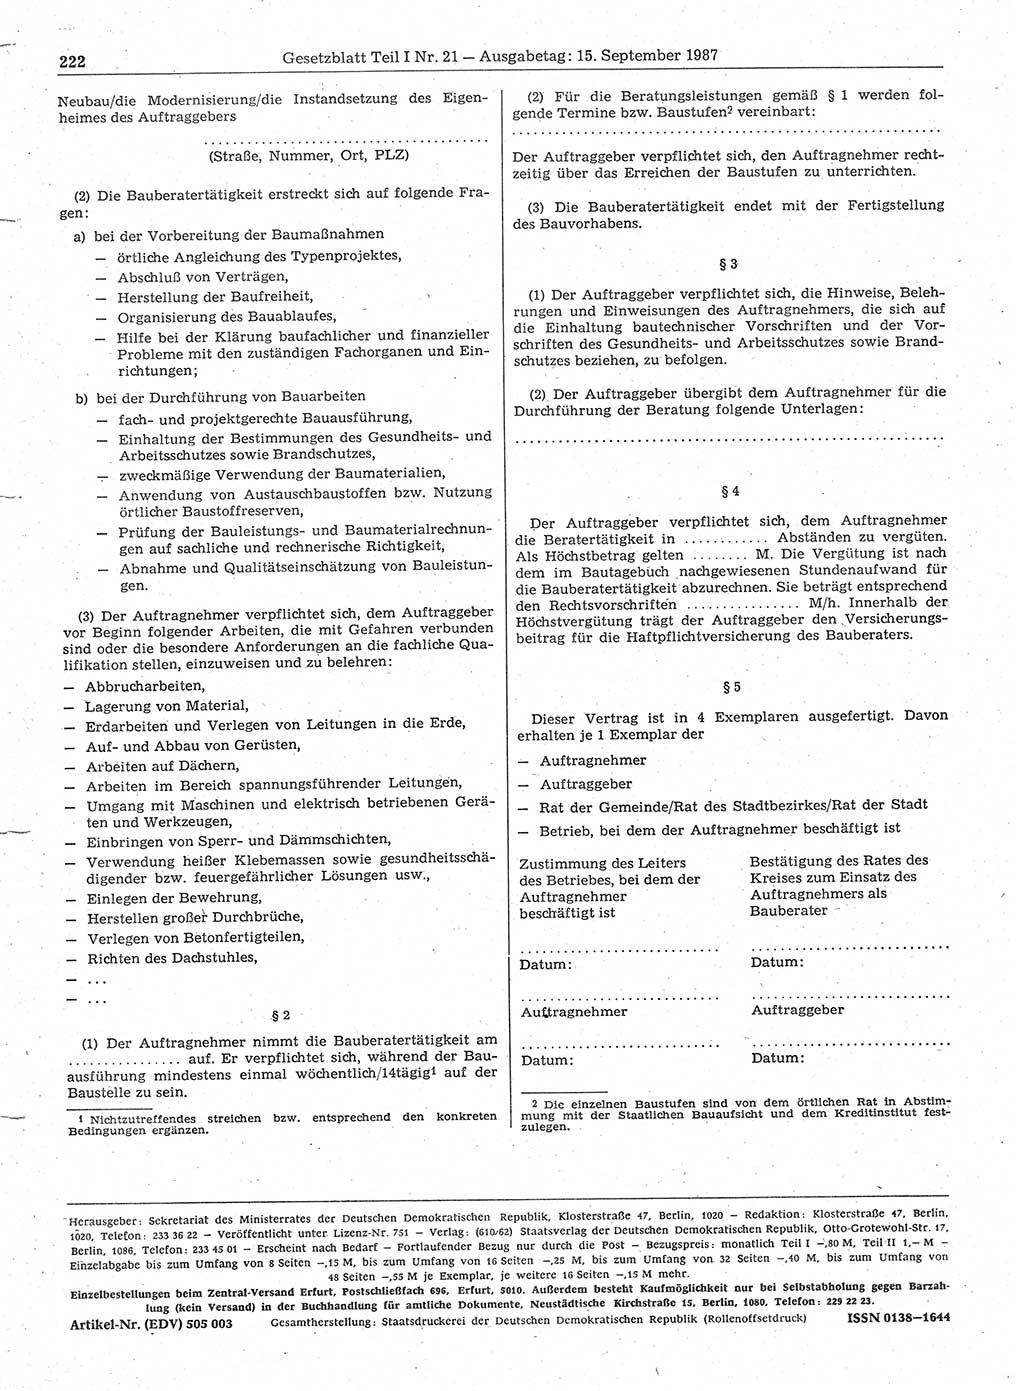 Gesetzblatt (GBl.) der Deutschen Demokratischen Republik (DDR) Teil Ⅰ 1987, Seite 222 (GBl. DDR Ⅰ 1987, S. 222)